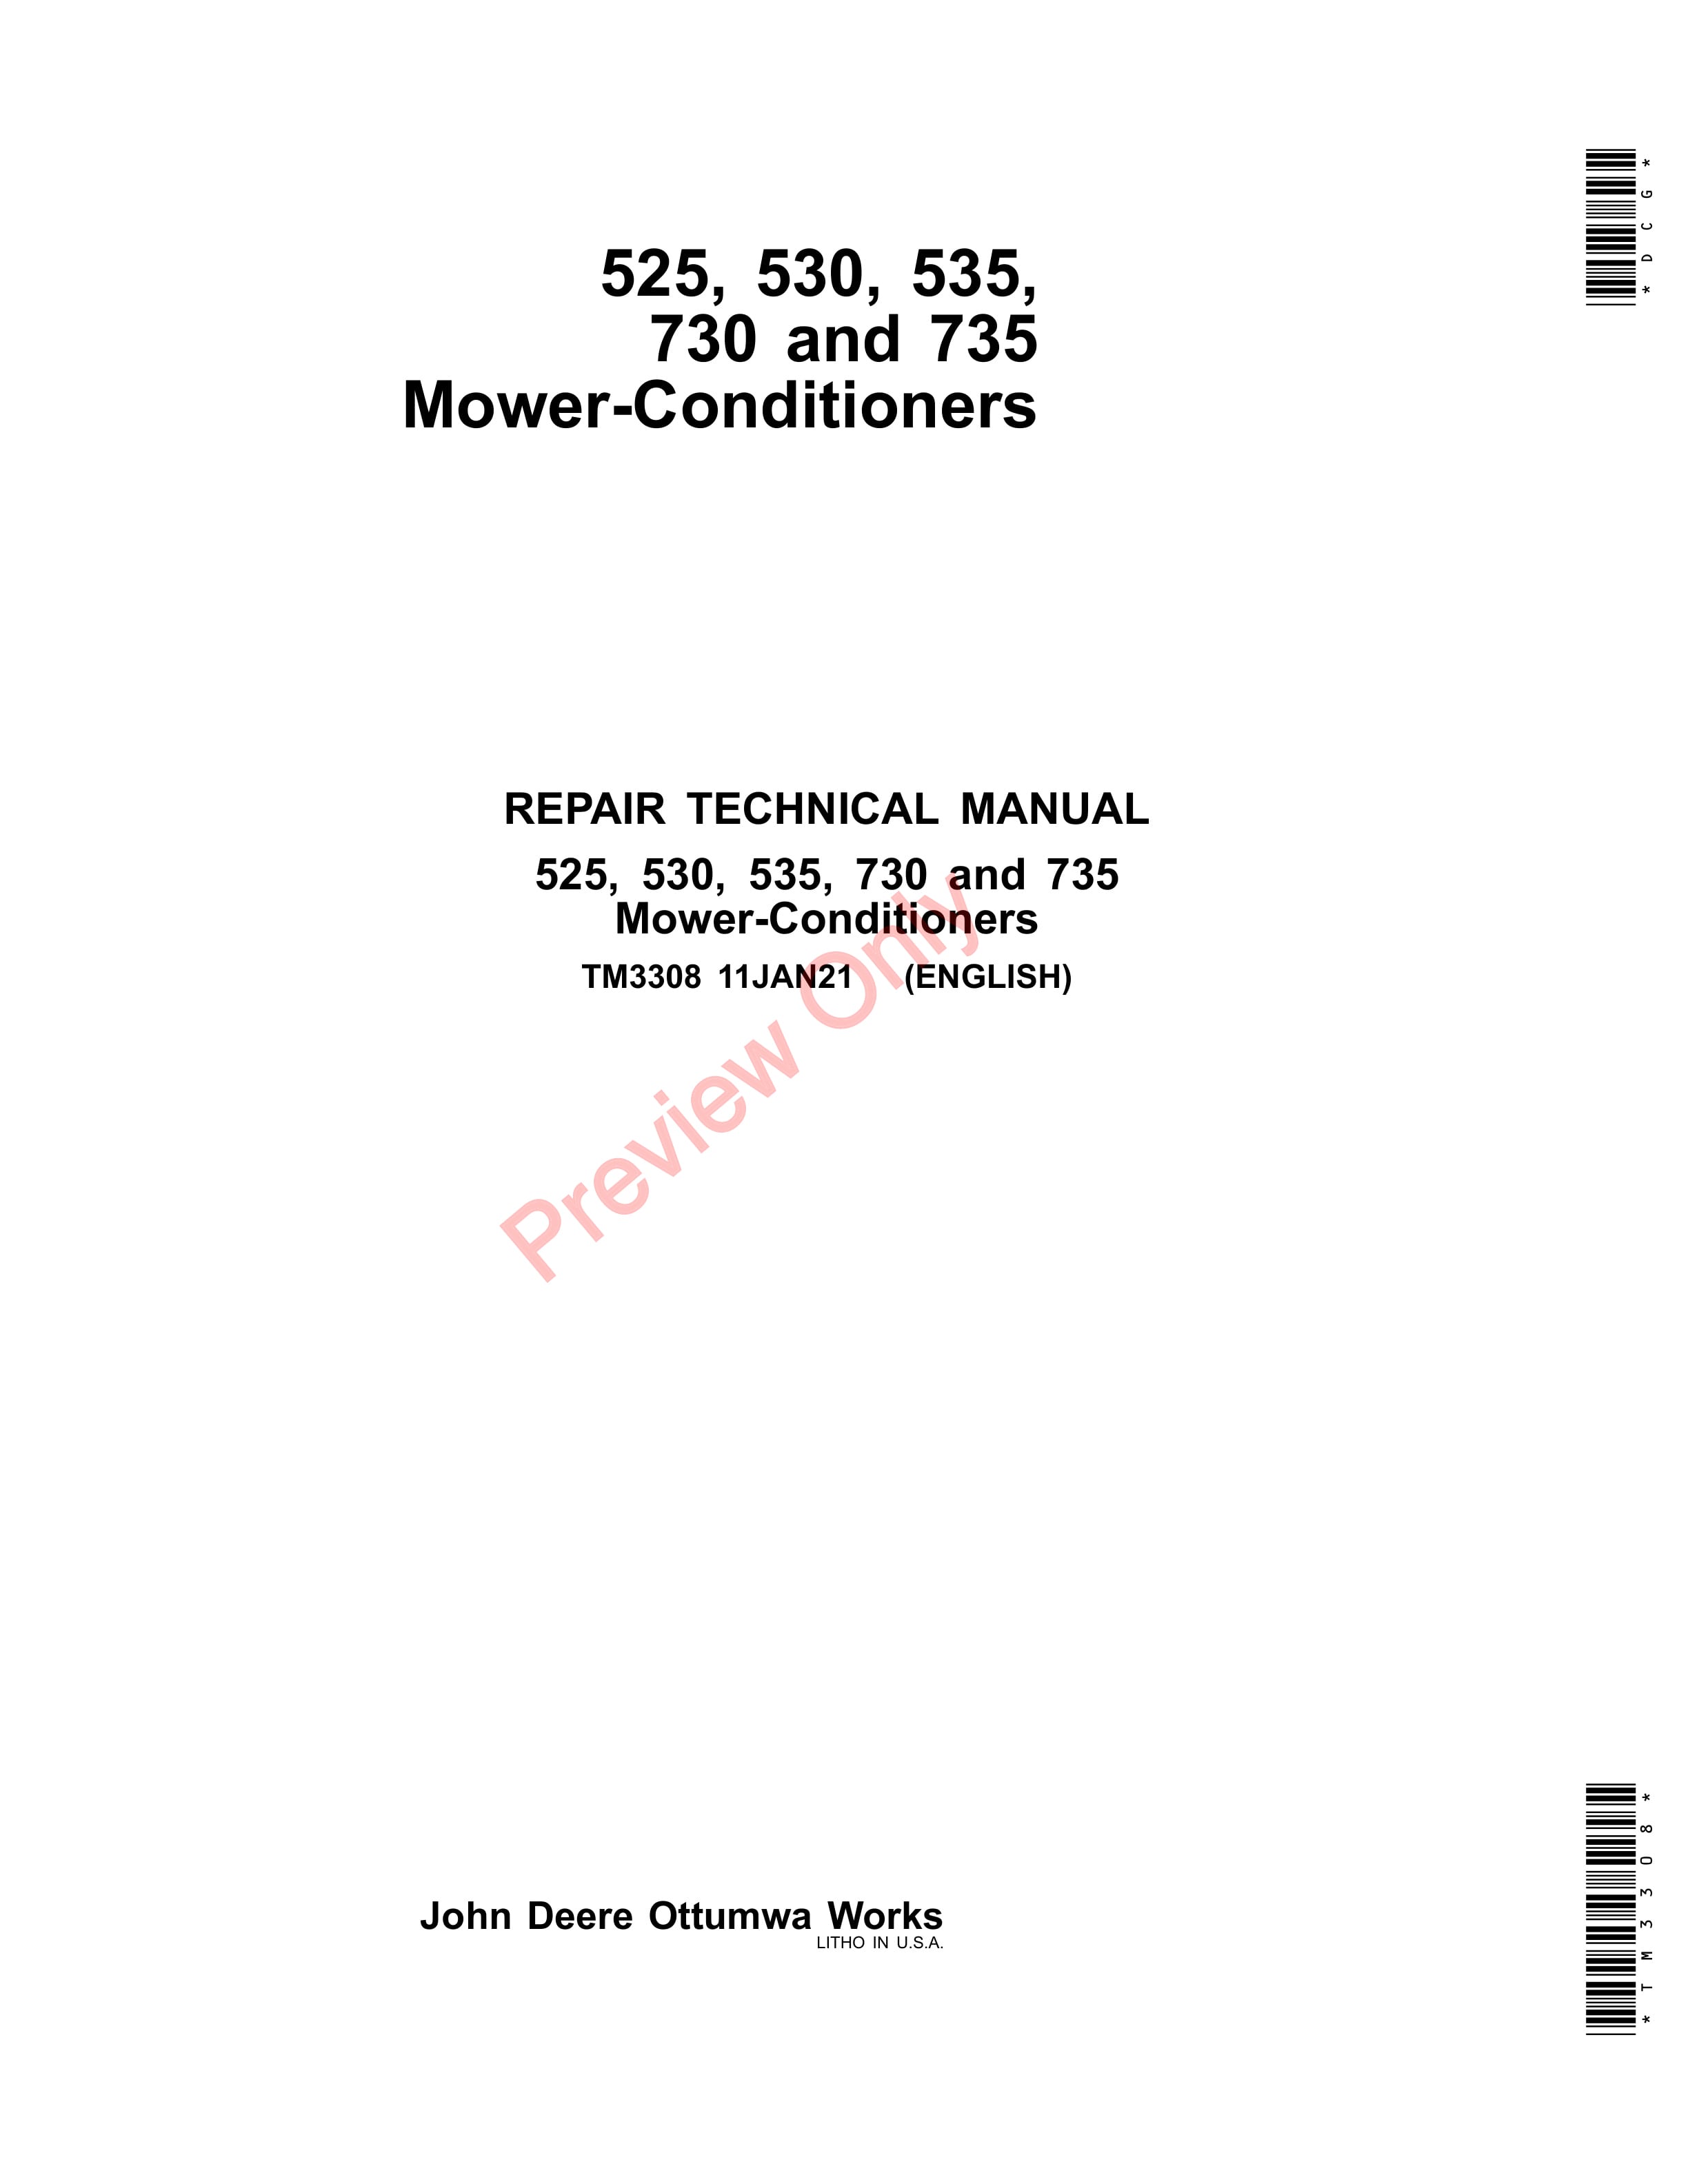 John Deere 525 530 535 730 and 735 Mower Conditioners Repair Technical Manual TM3308 11JAN21 1